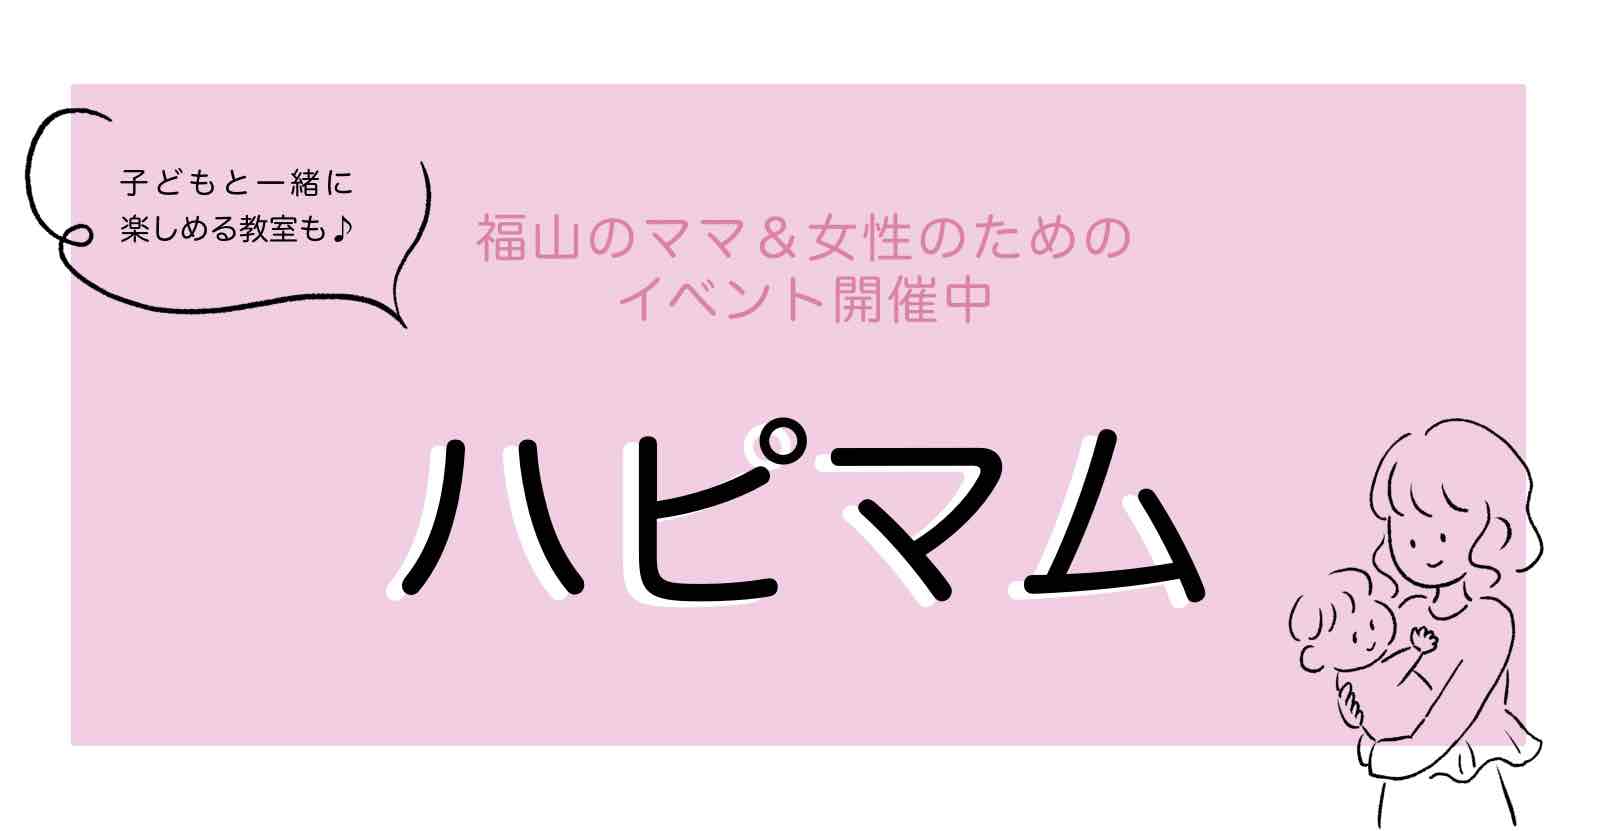 福山ママの平日イベント「ハピマム」2023年3月開催日程